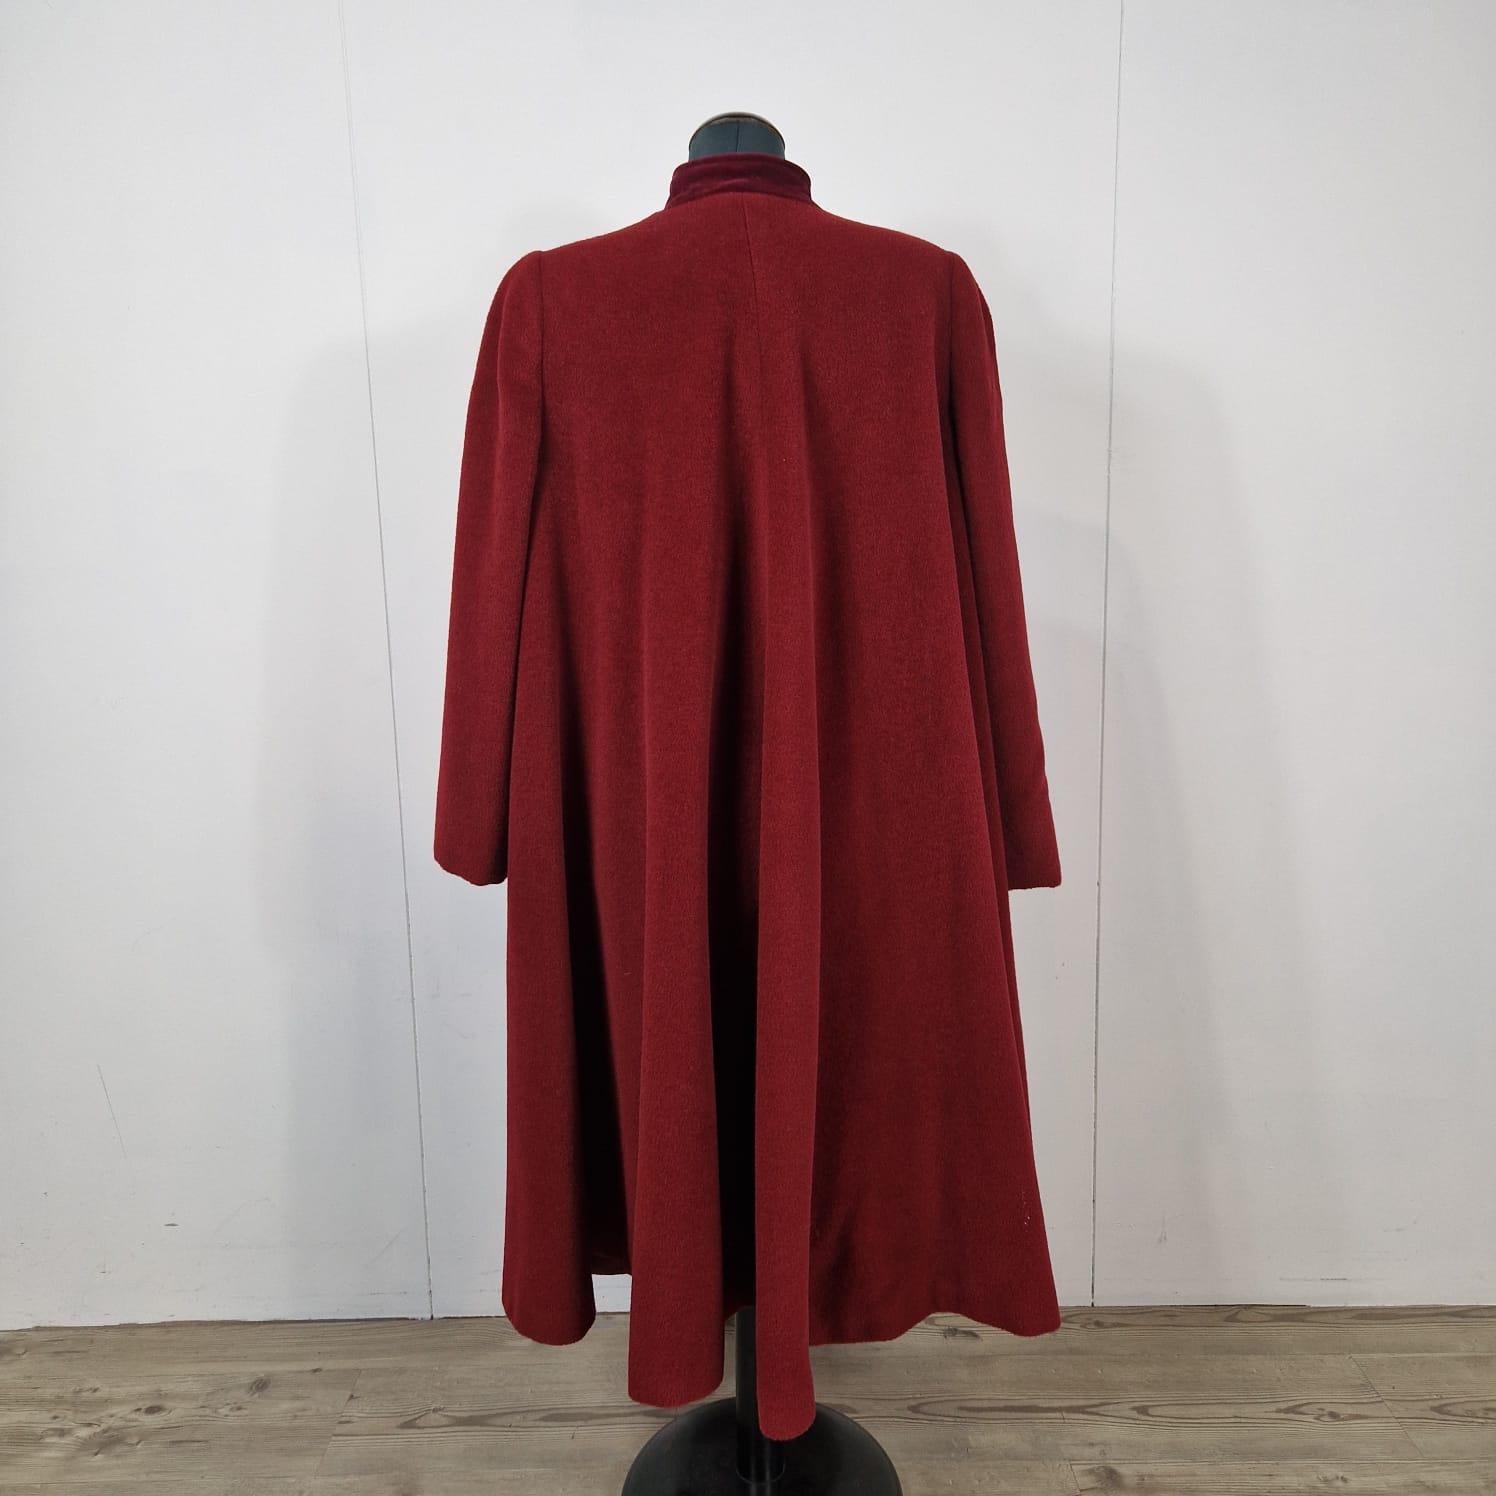 Women's or Men's Valentino coat in burgundy wool.